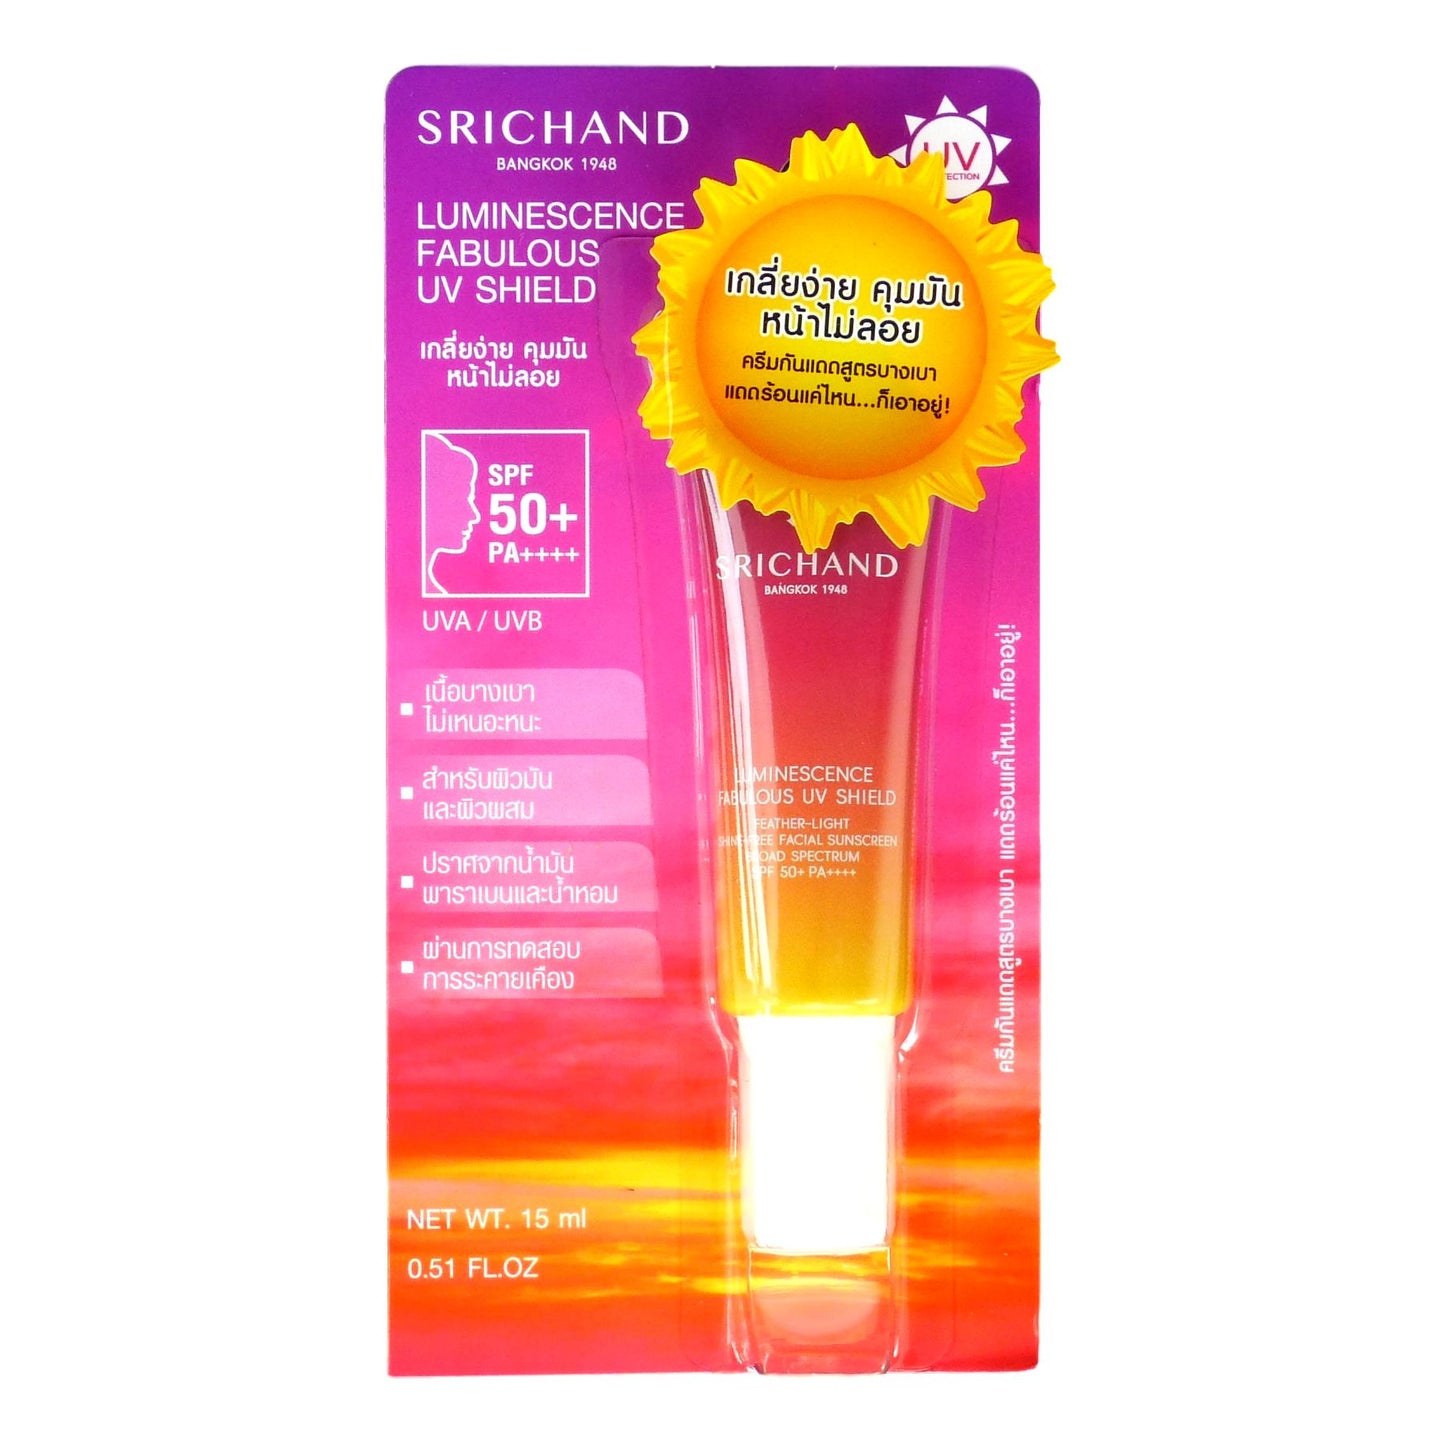 Srichand Luminescence Fabulous UV Shield Facial Sunscreen 15ml - Asian Beauty Supply